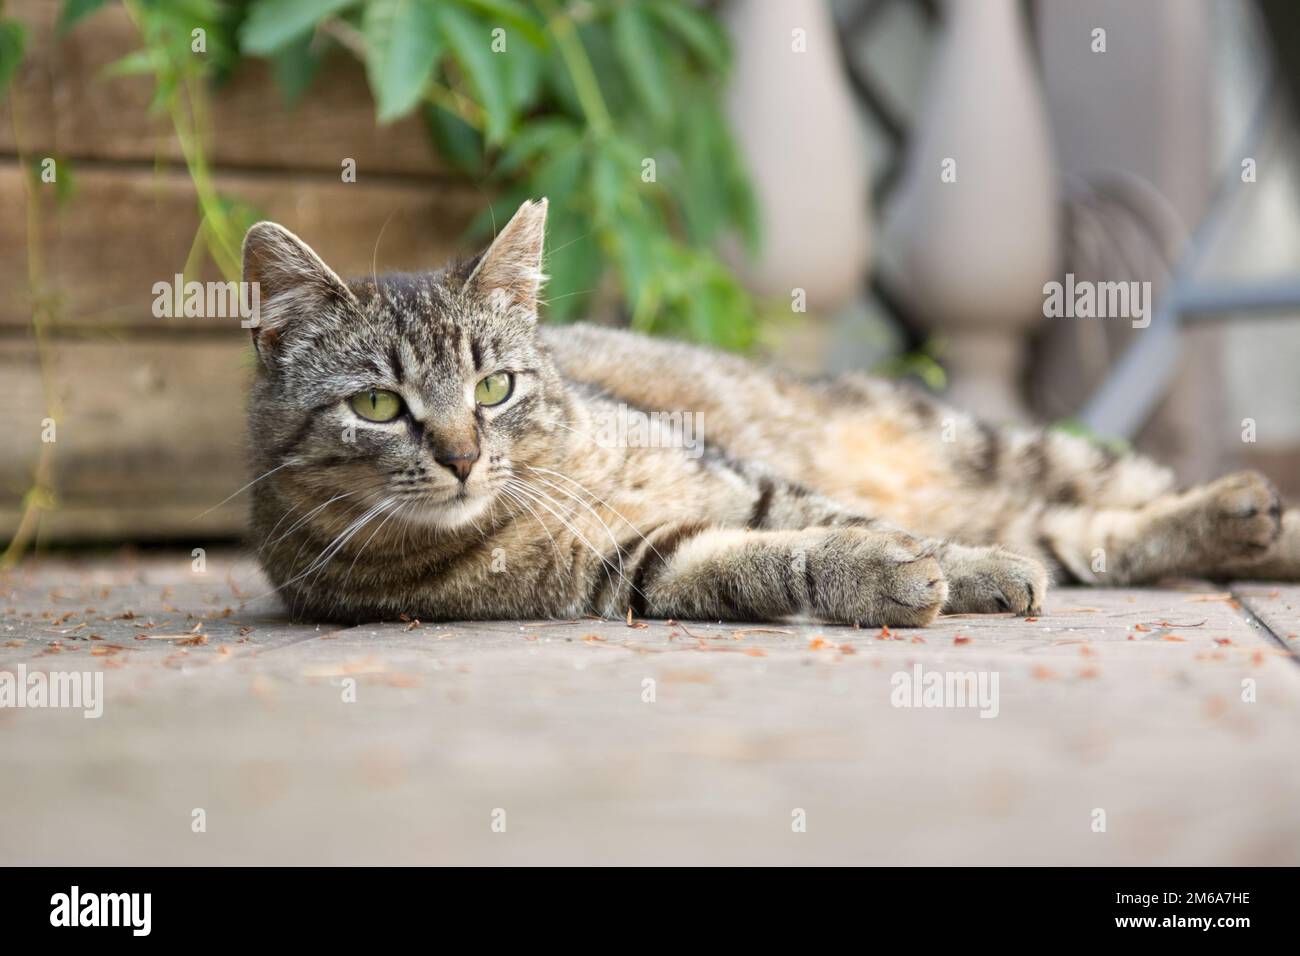 Gestreifte graue Katze, die auf der Seite auf einem Deck liegt - Schnittnarbe am linken Ohr Stockfoto